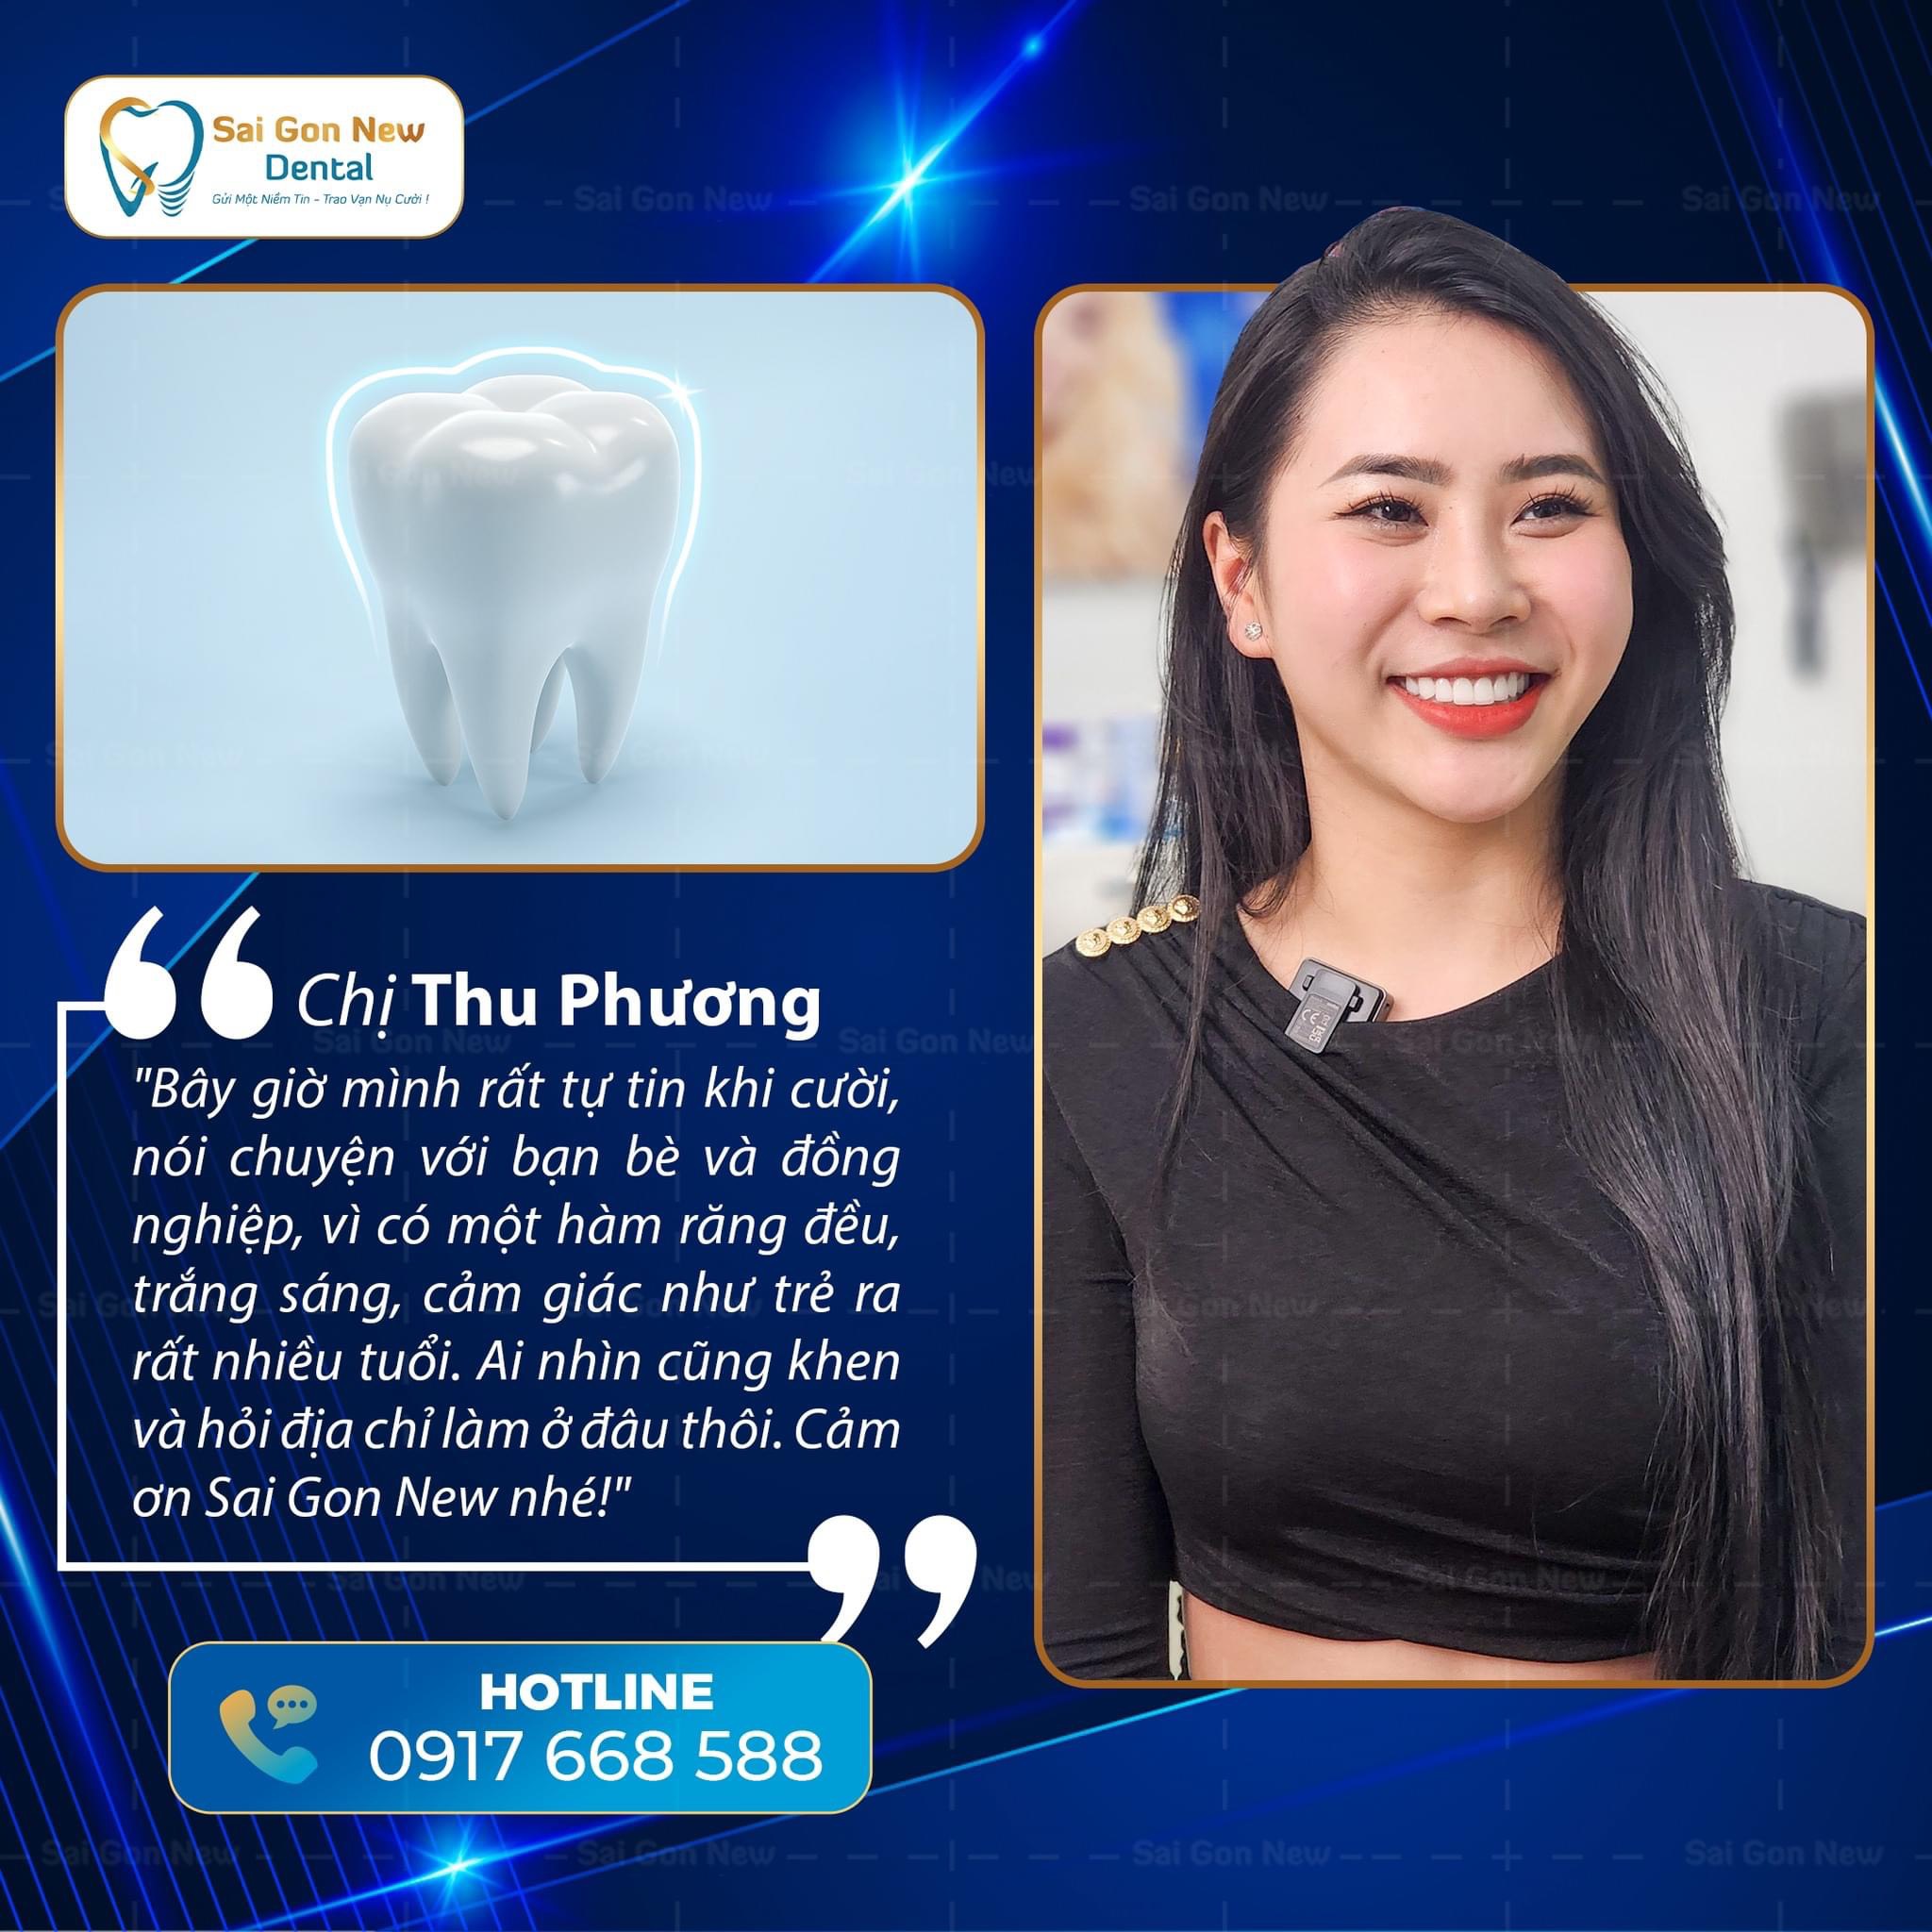 Bọc răng sứ thẩm mỹ tại Quảng Bình